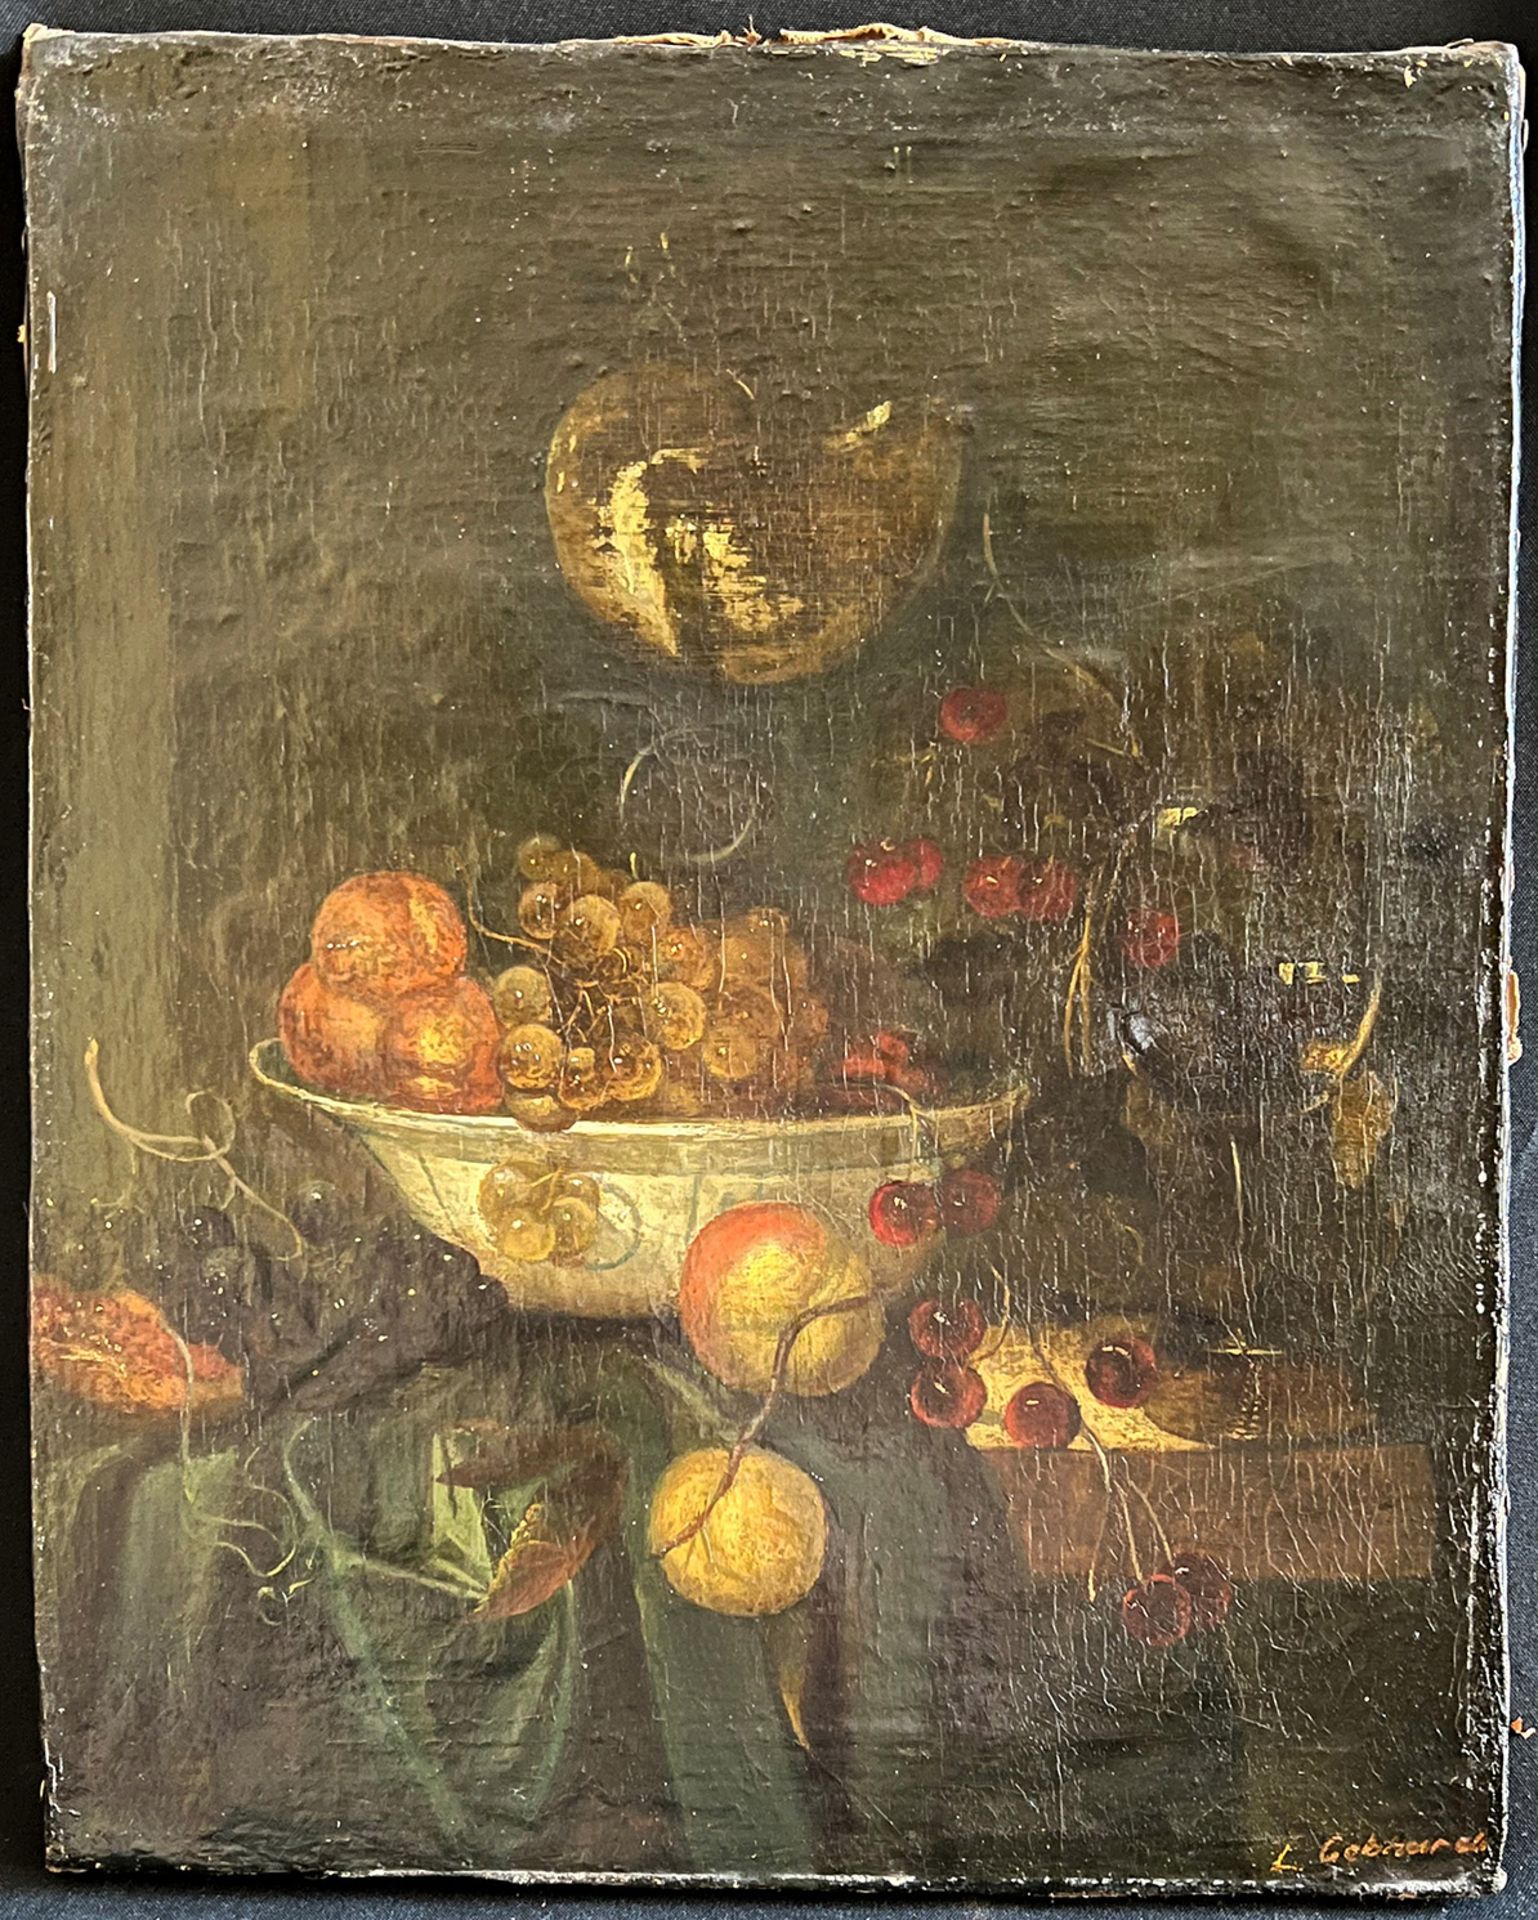 L. Gebhard, 19. Jh., Obststilleben in weißer Schale, signiert, Öl/Lwd, Altersspuren, 41 x 33 cm - Image 4 of 5